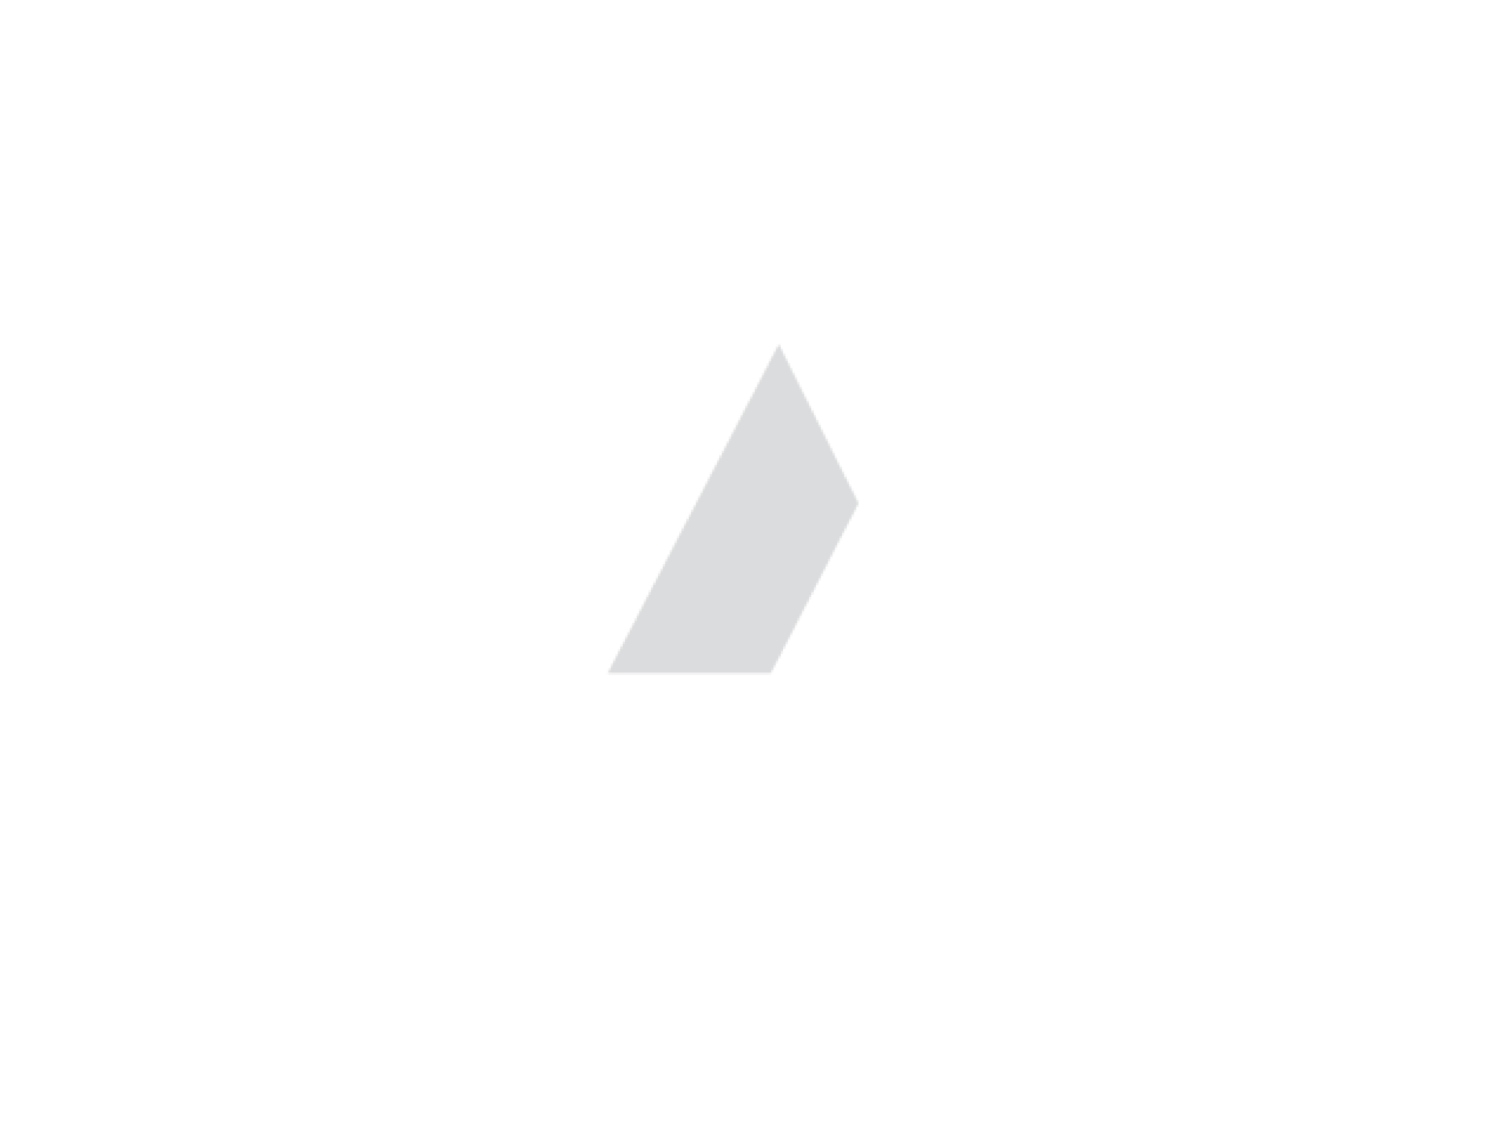 Mabus Group